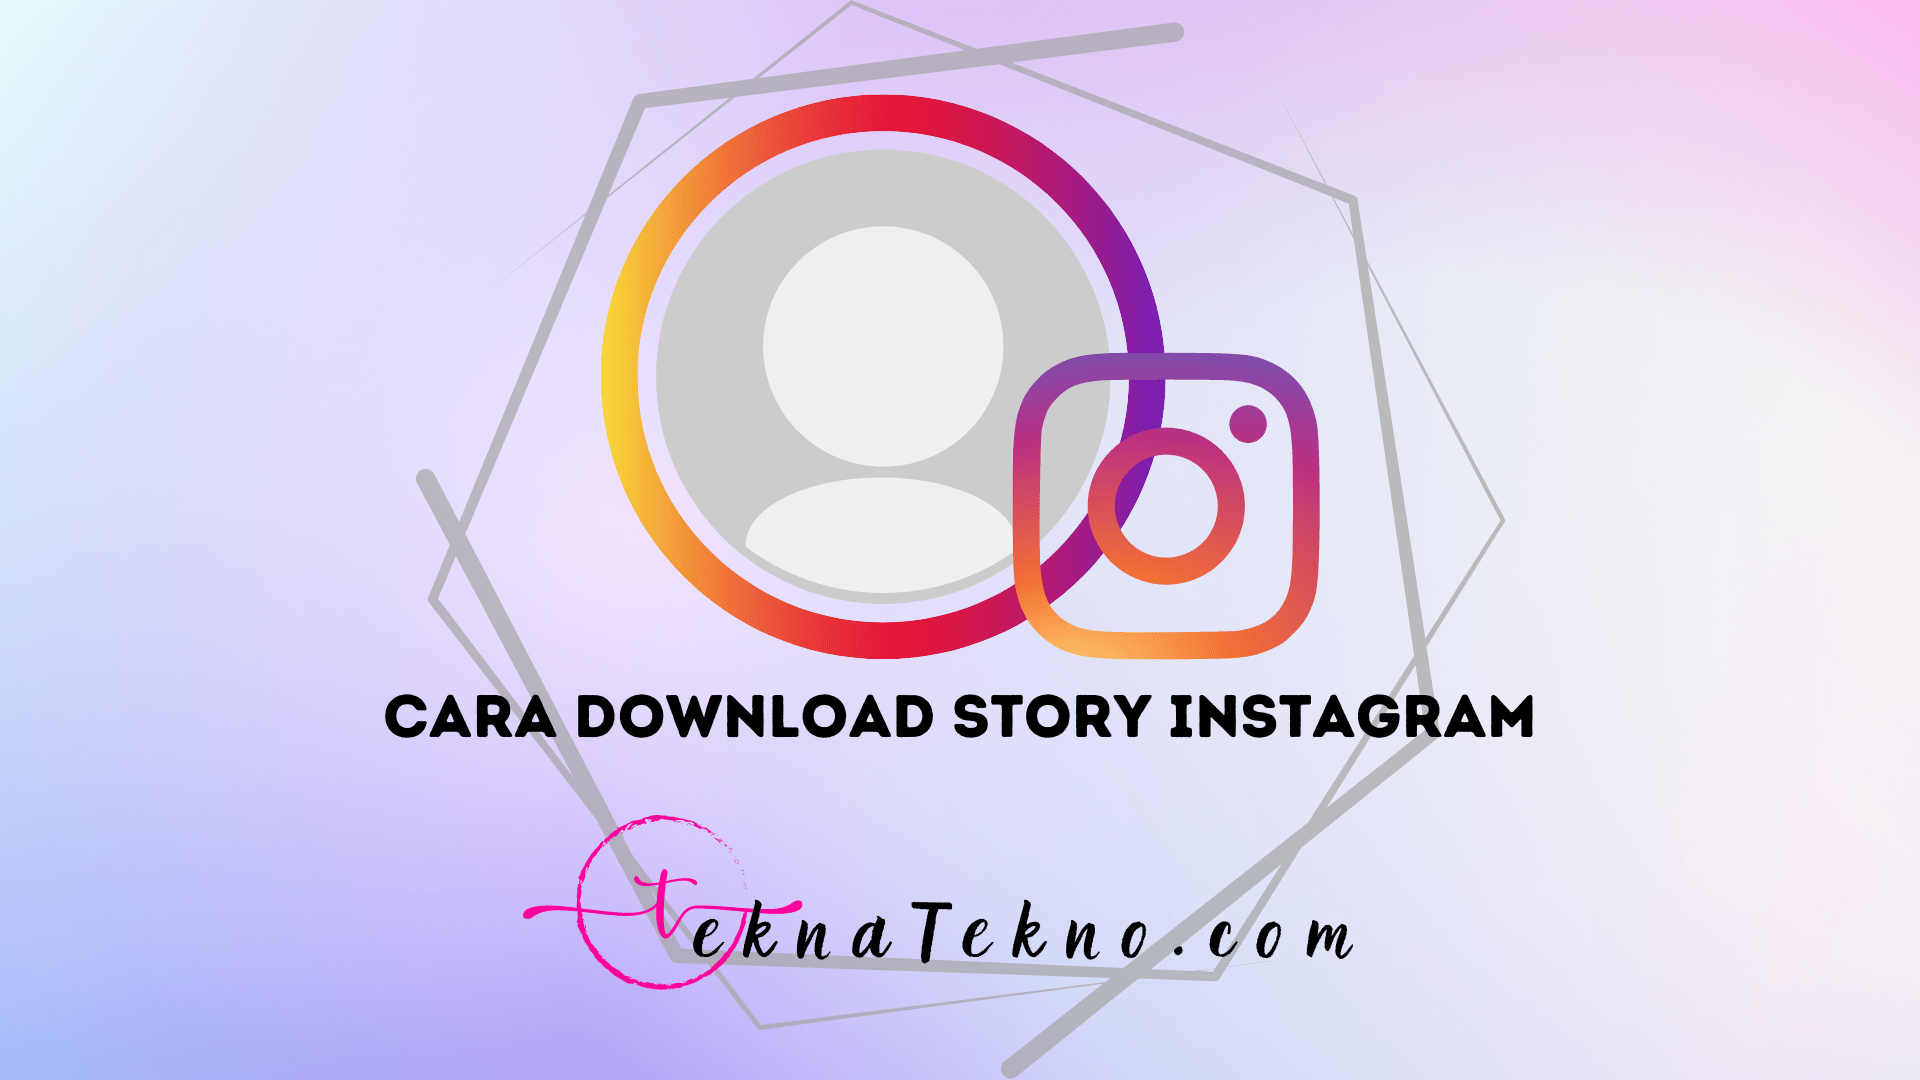 4 Cara Download Story Instagram dengan Mudah Tanpa Aplikasi